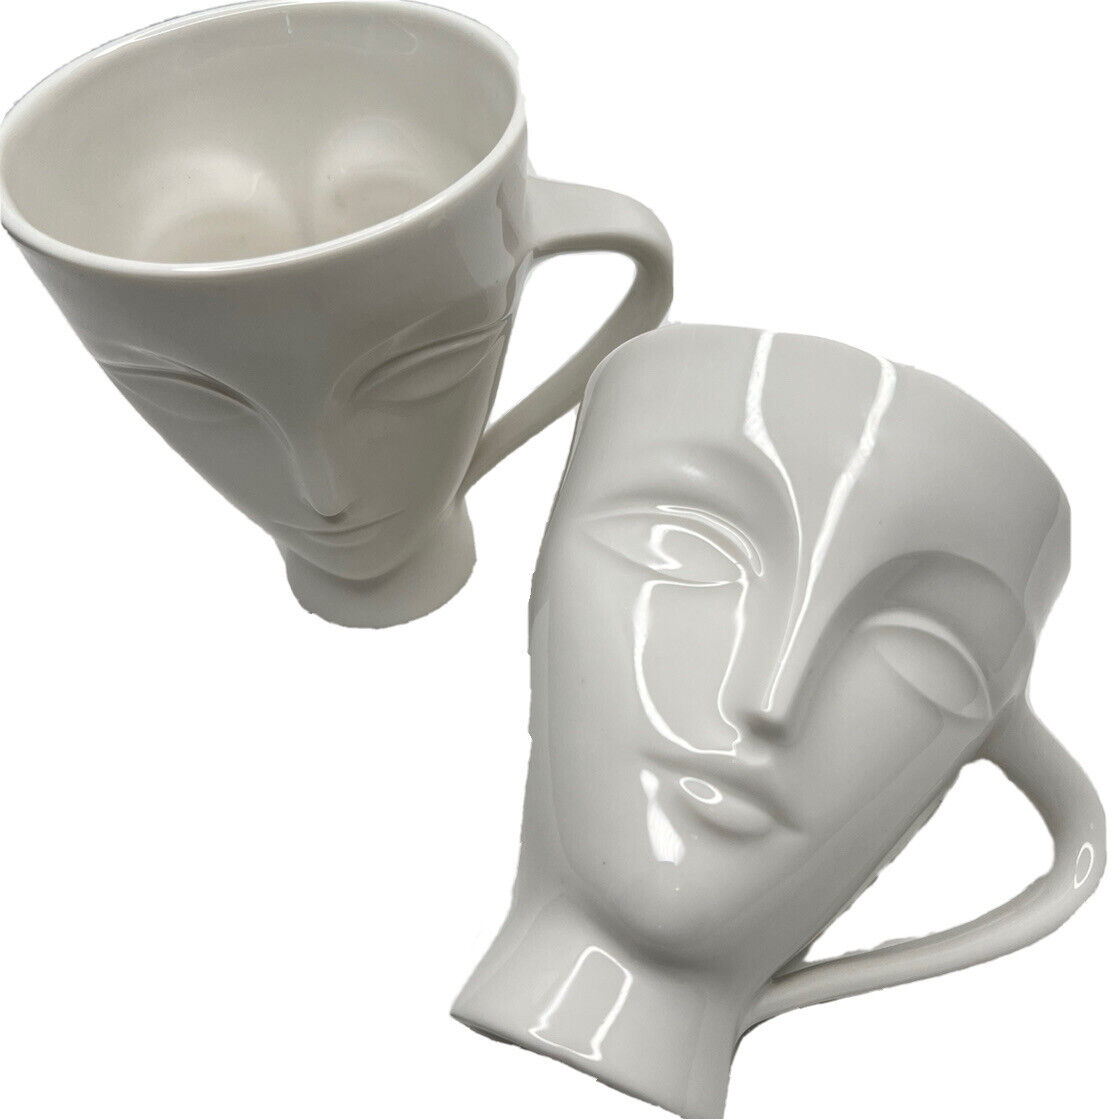 Jonathan Adler Giuliette White Mug Set Of 2 Modern Female Woman’s Face Gift